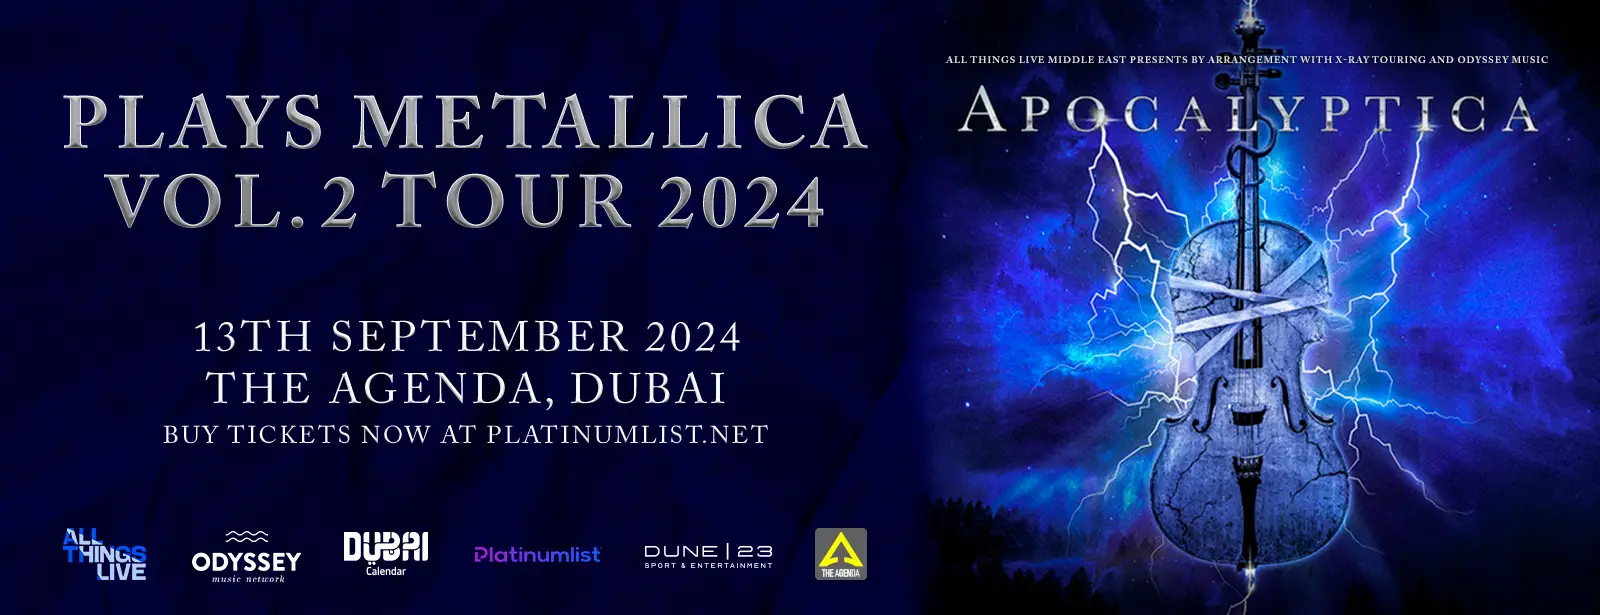 Apocalyptica Plays Metallica at The Agenda, Dubai - Wow-Emirates